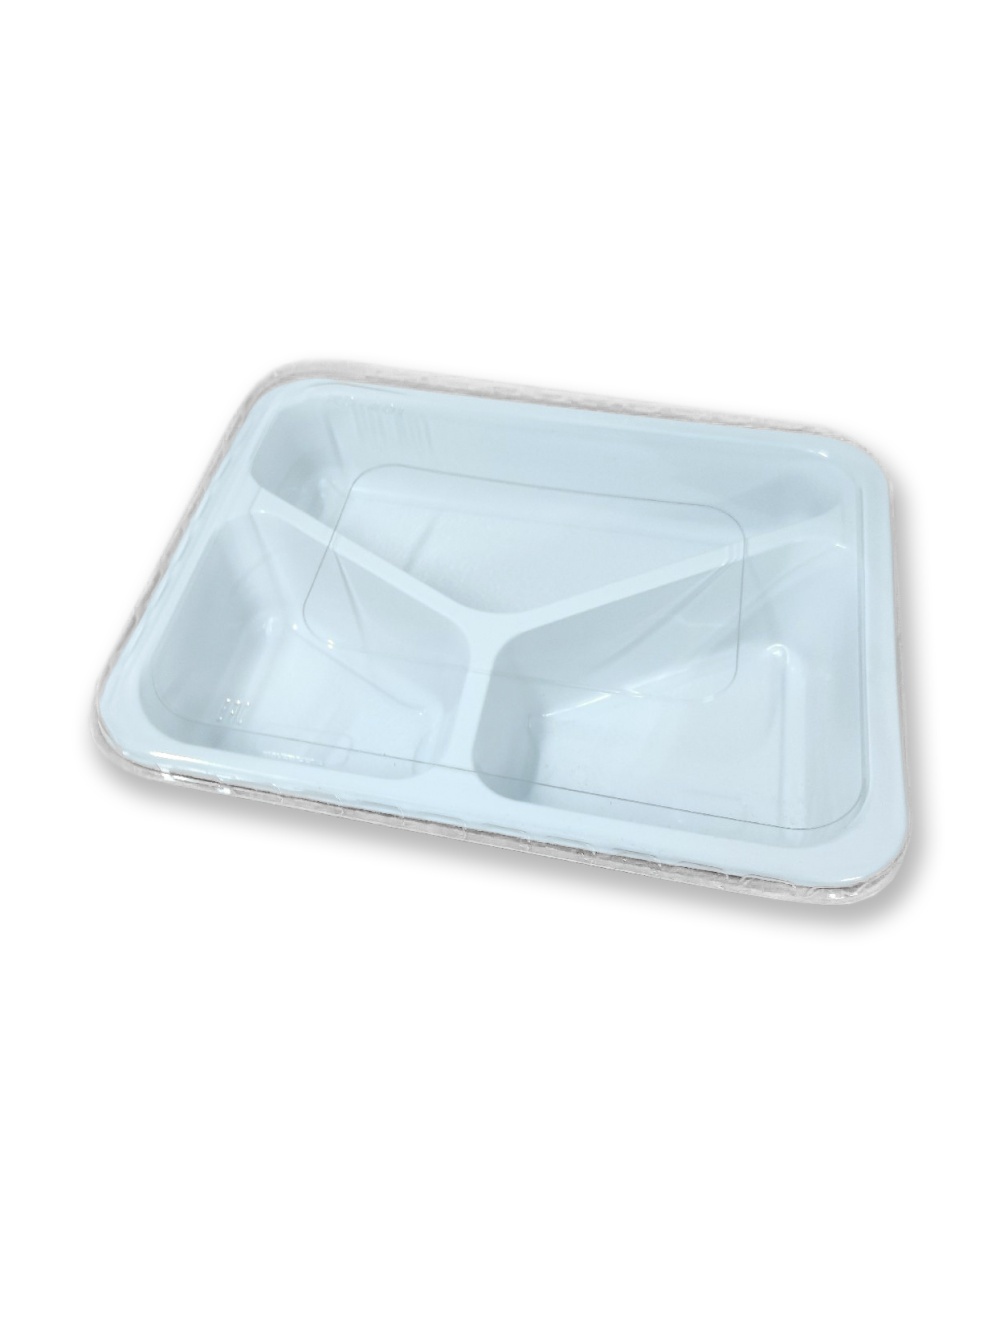 Контейнер - ланч-бокс пластиковый с прозрачной крышкой (РД-001) 3-х секционный для обедов, р-р внешний 227*177*36мм